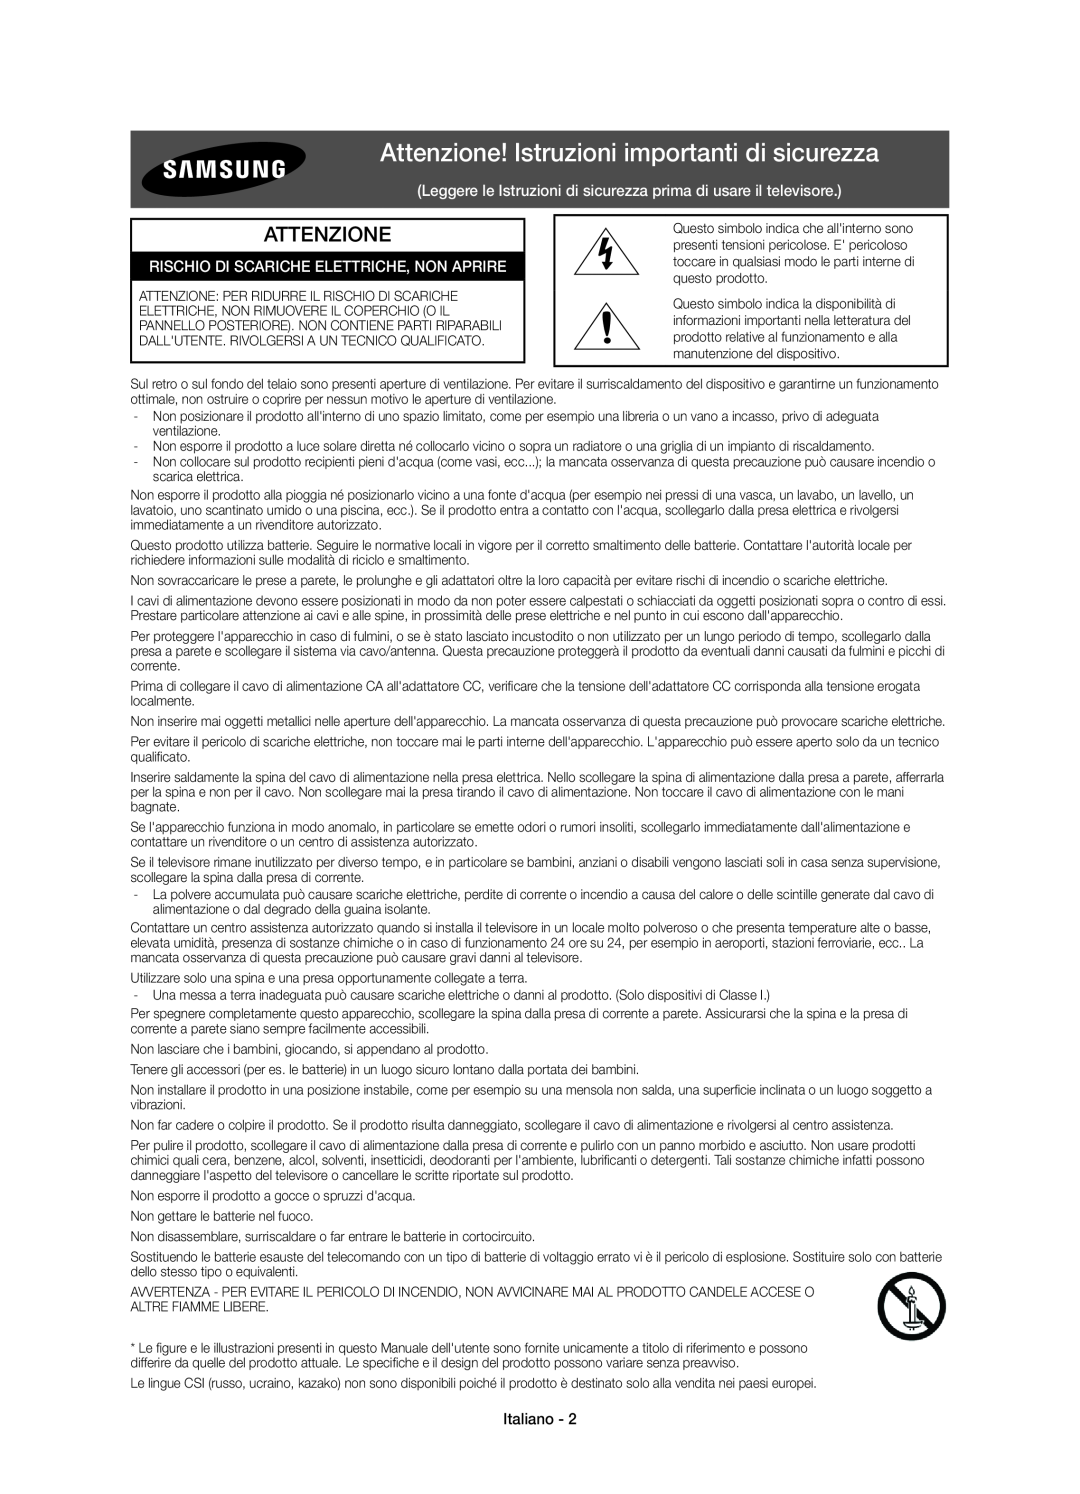 Samsung UE43J5670SUXZG manual Attenzione! Istruzioni importanti di sicurezza, Rischio Di Scariche Elettriche, Non Aprire 